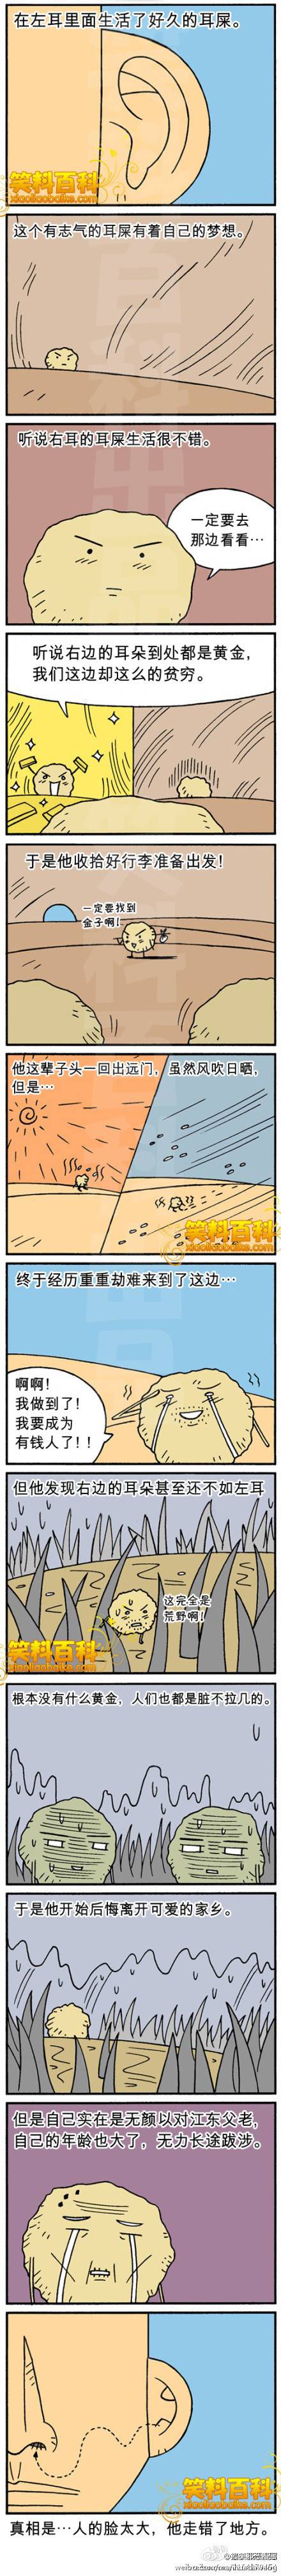 邪恶漫画爆笑囧图第62刊：狂暴